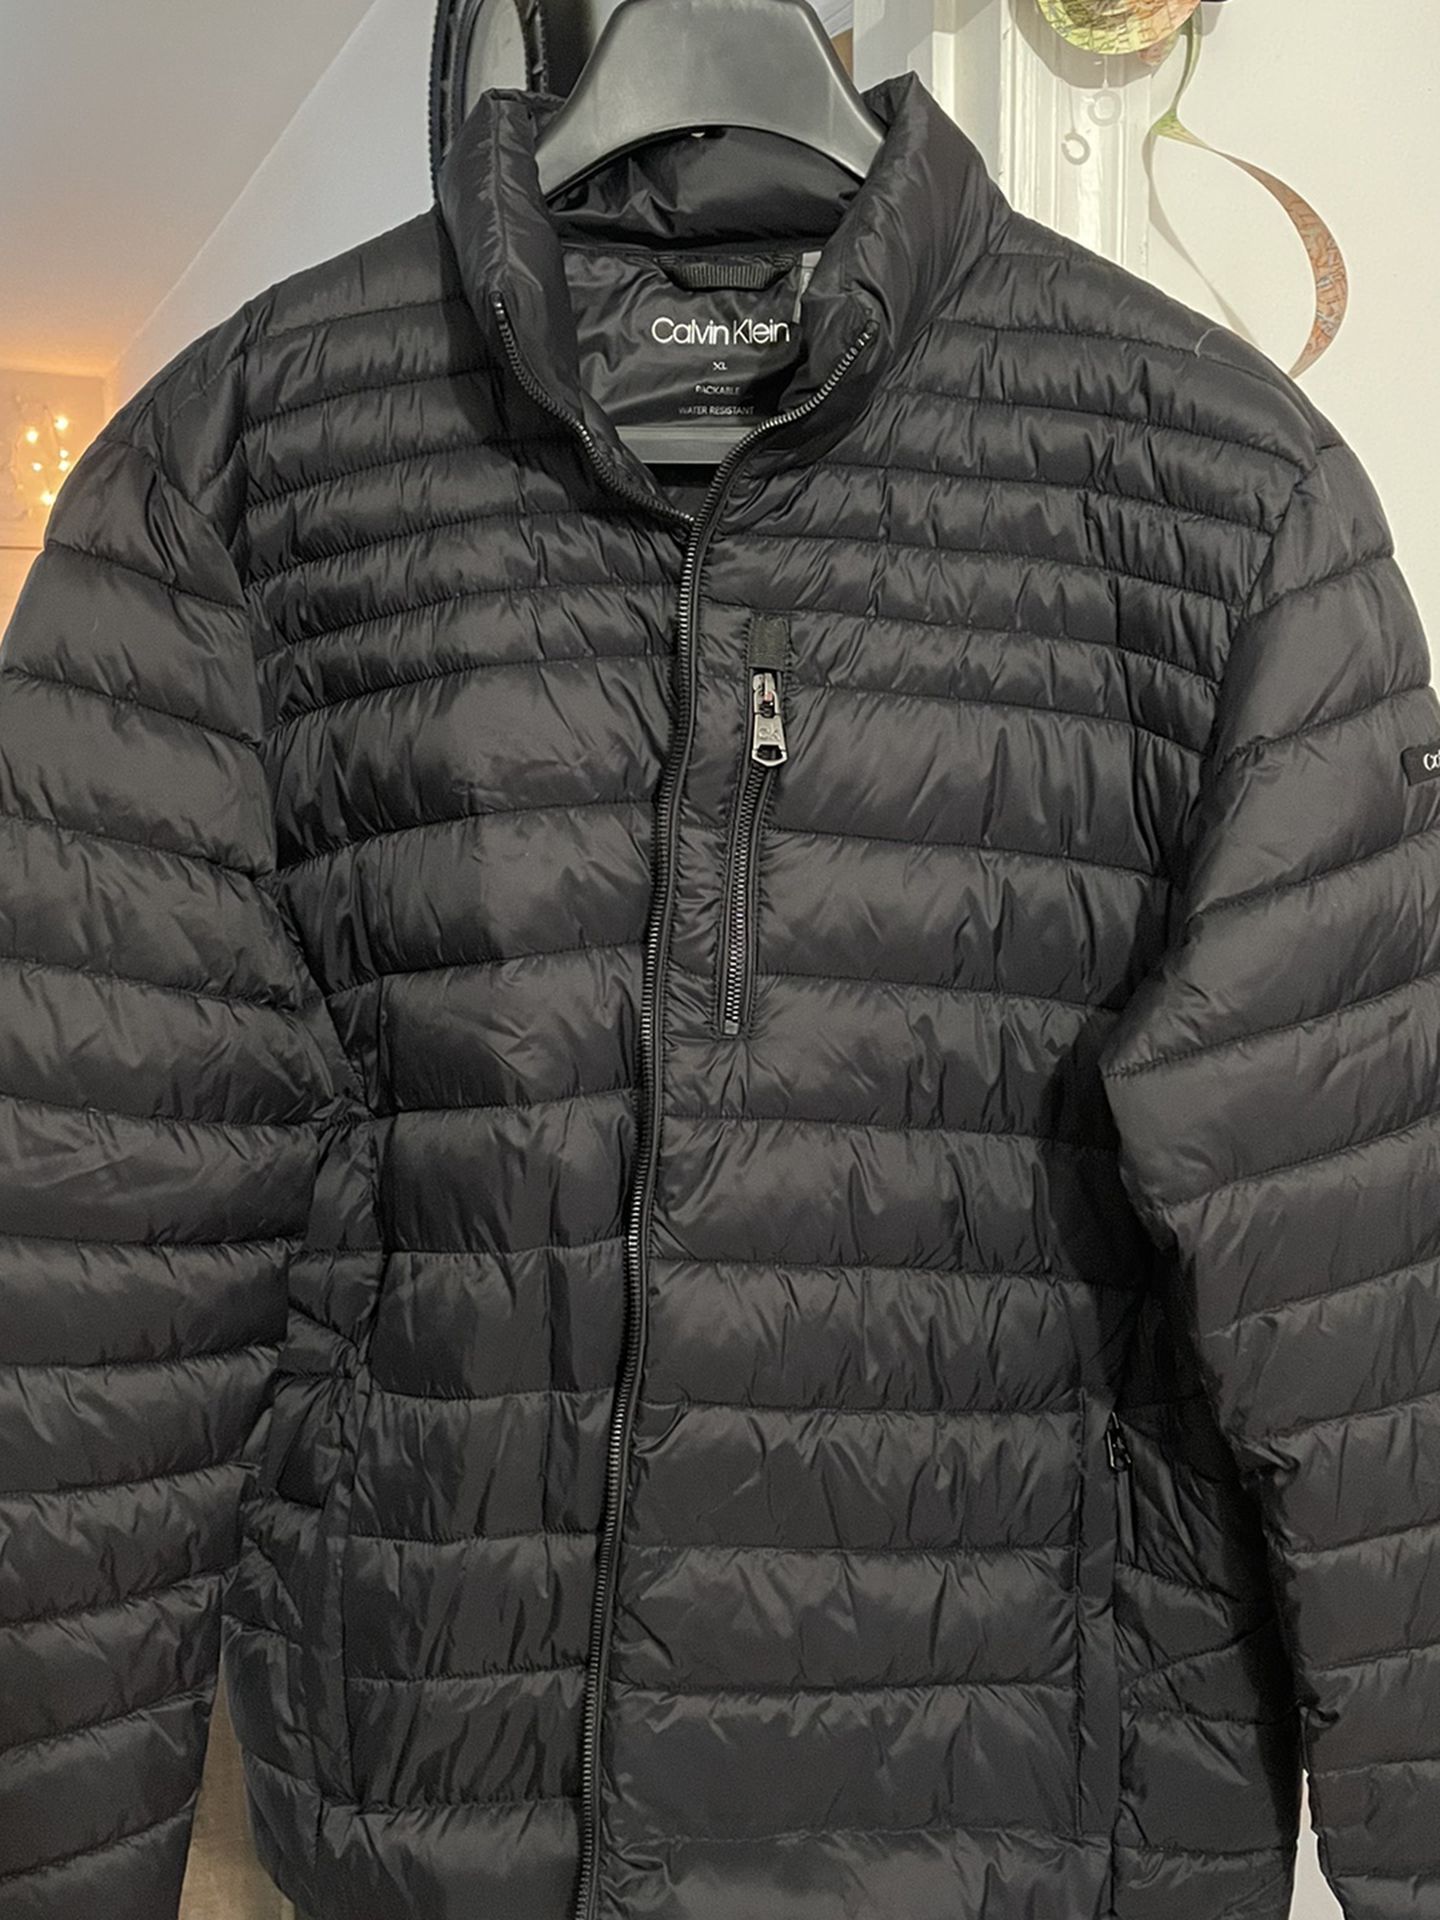 Warm Winter Lightweight Jacket